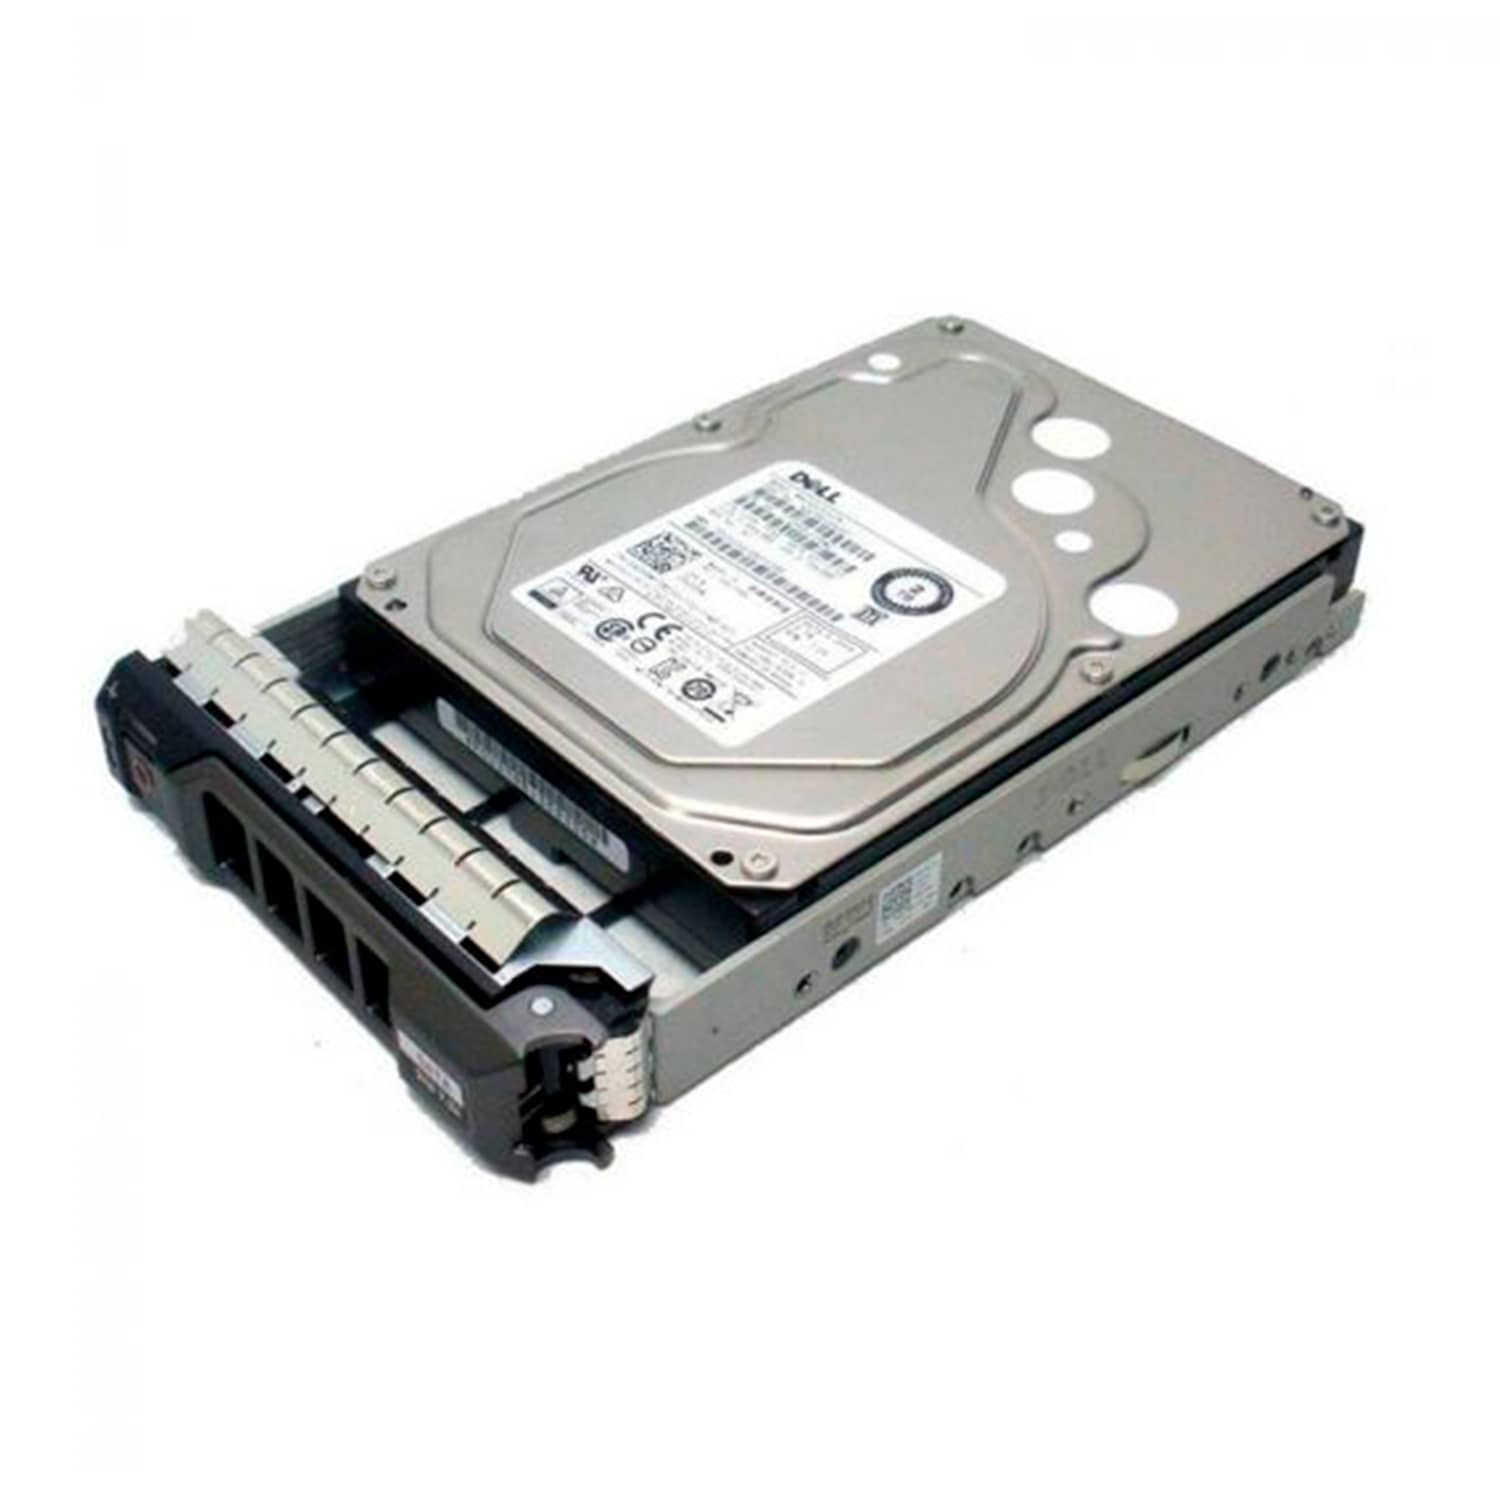 Dell - Hard drive - Internal hard drive - 2 TB - 3.5" - HotPlug T 350/550 - DH960DEL10